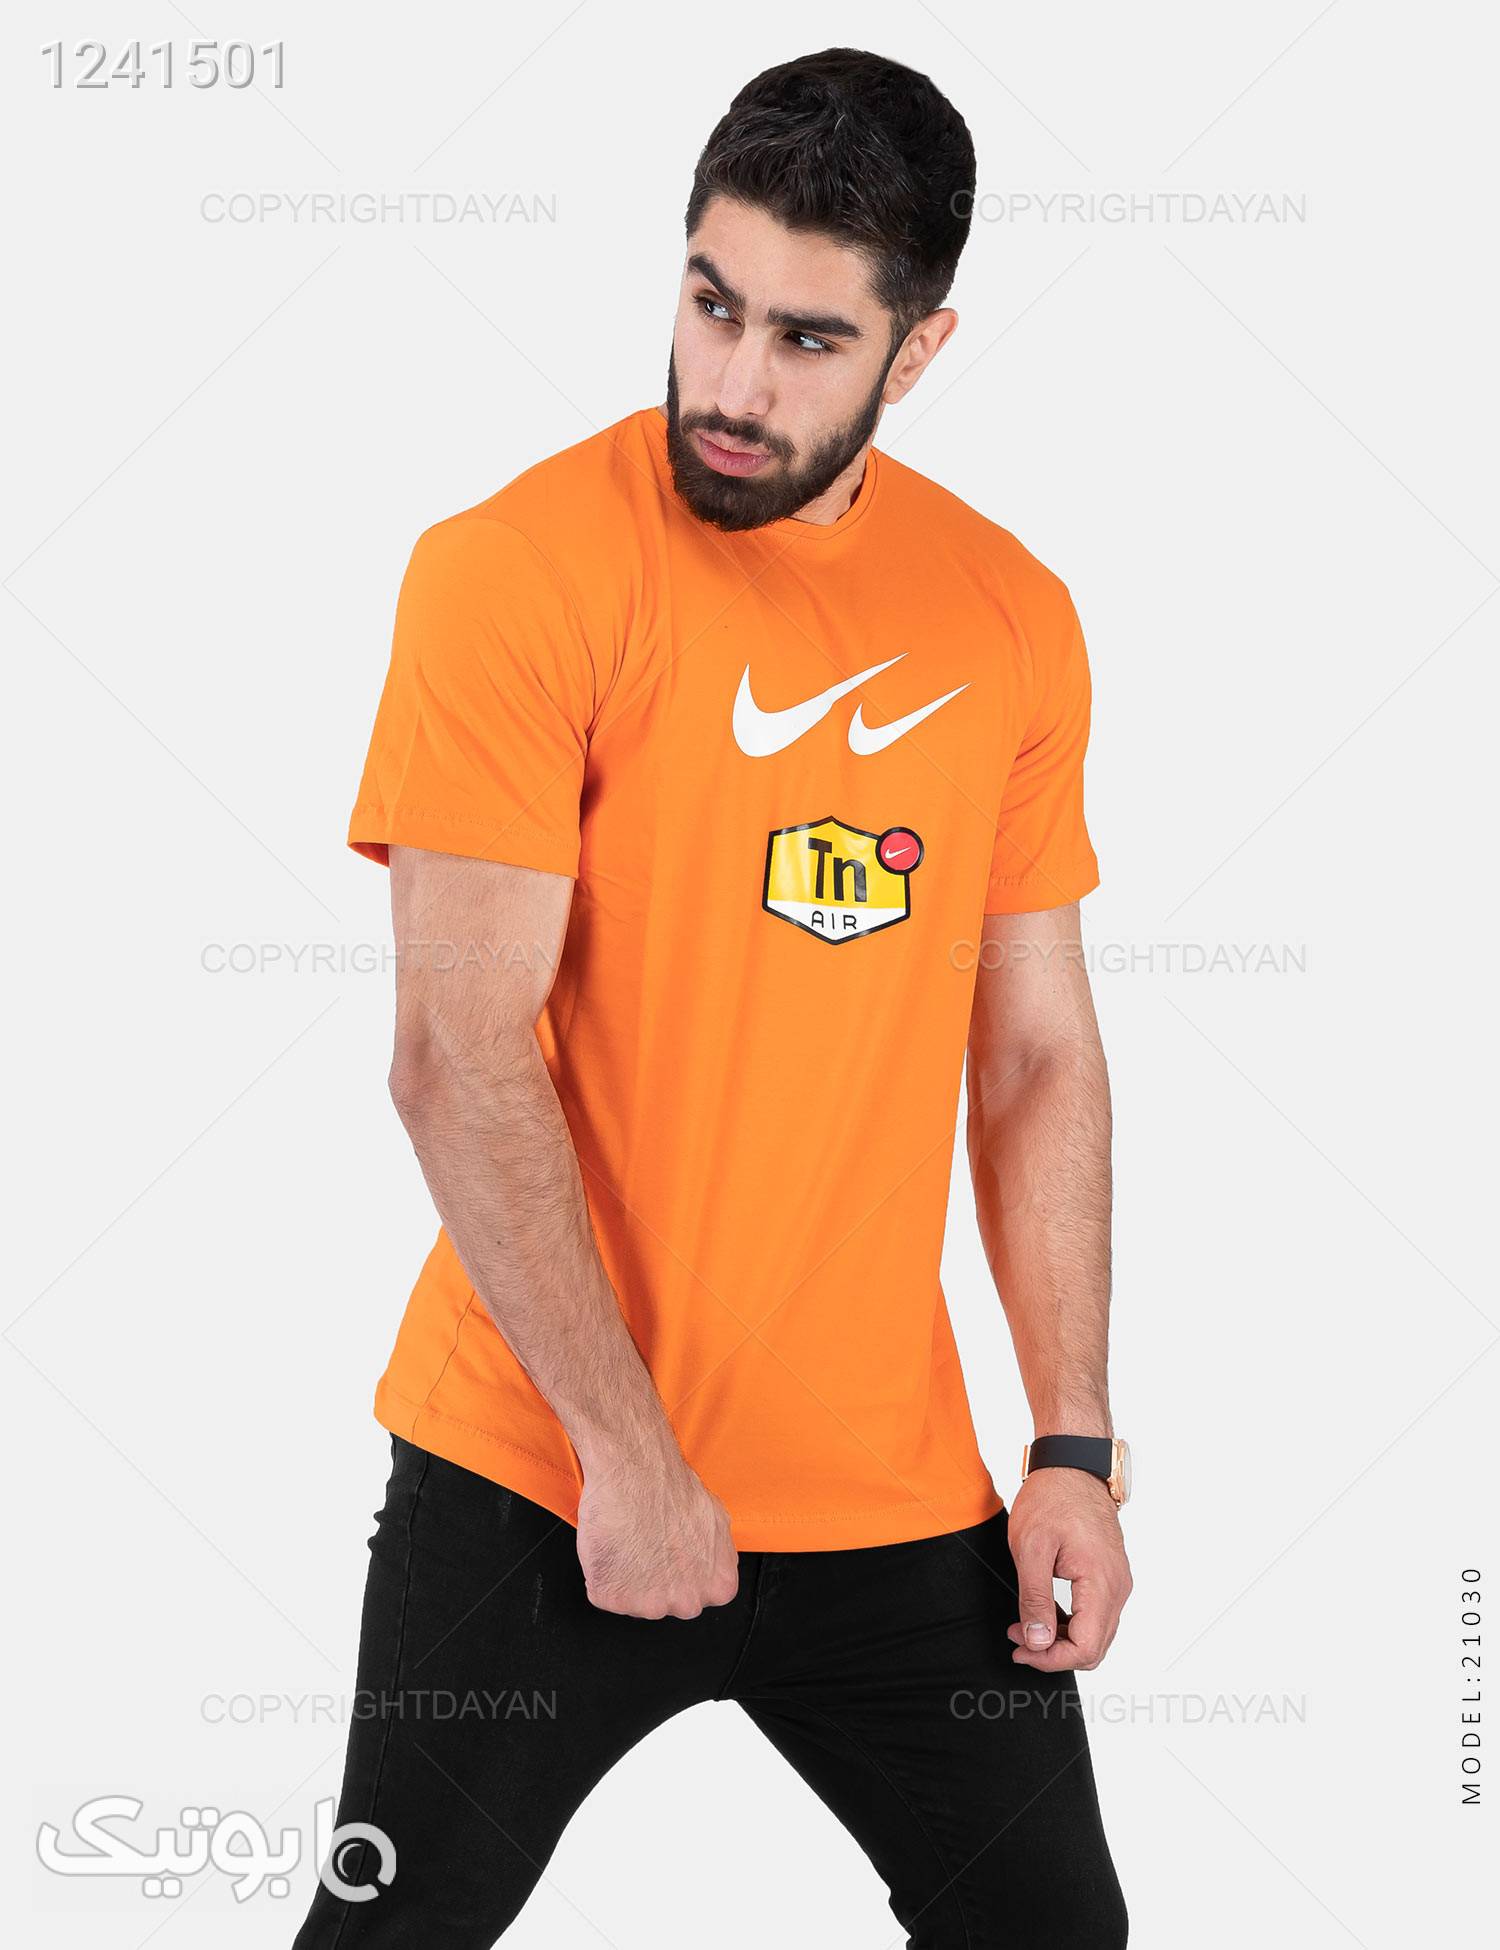 تیشرت مردانه Nike مدل 21030 نارنجی تی شرت و پولو شرت مردانه